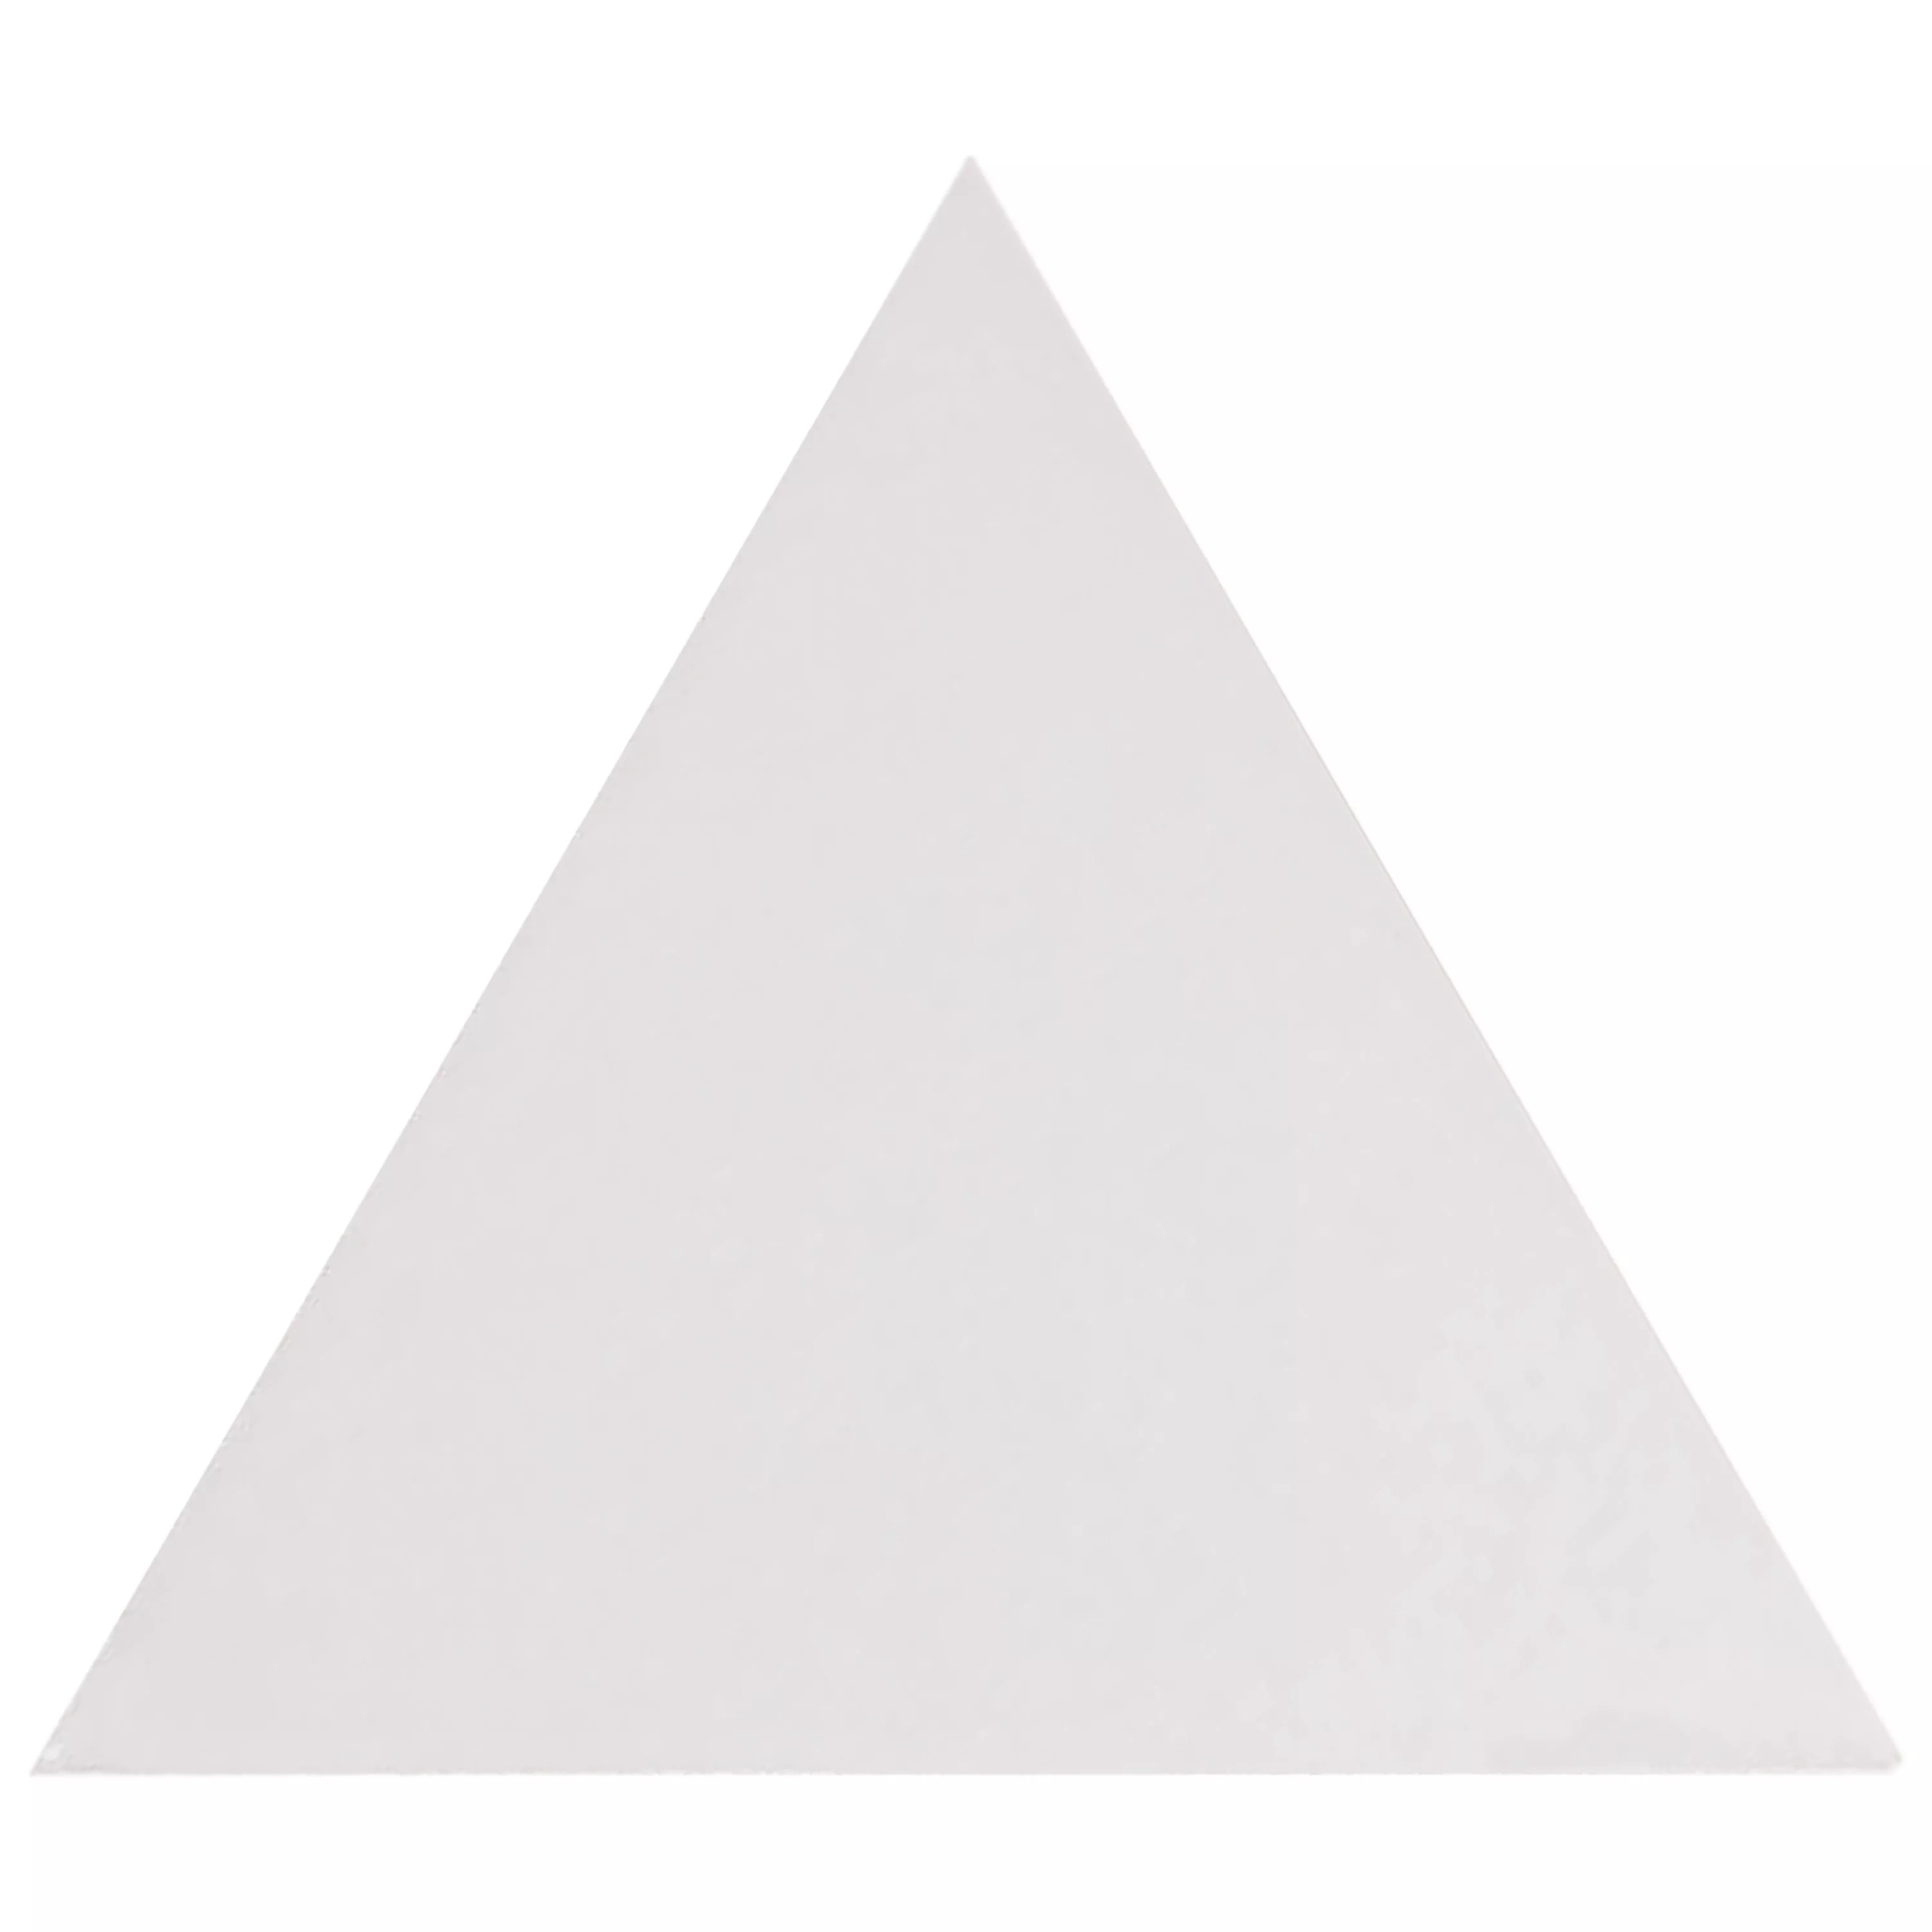 Sample Wall Tiles Britannia Triangle 10,8x12,4cm Blanc Mat